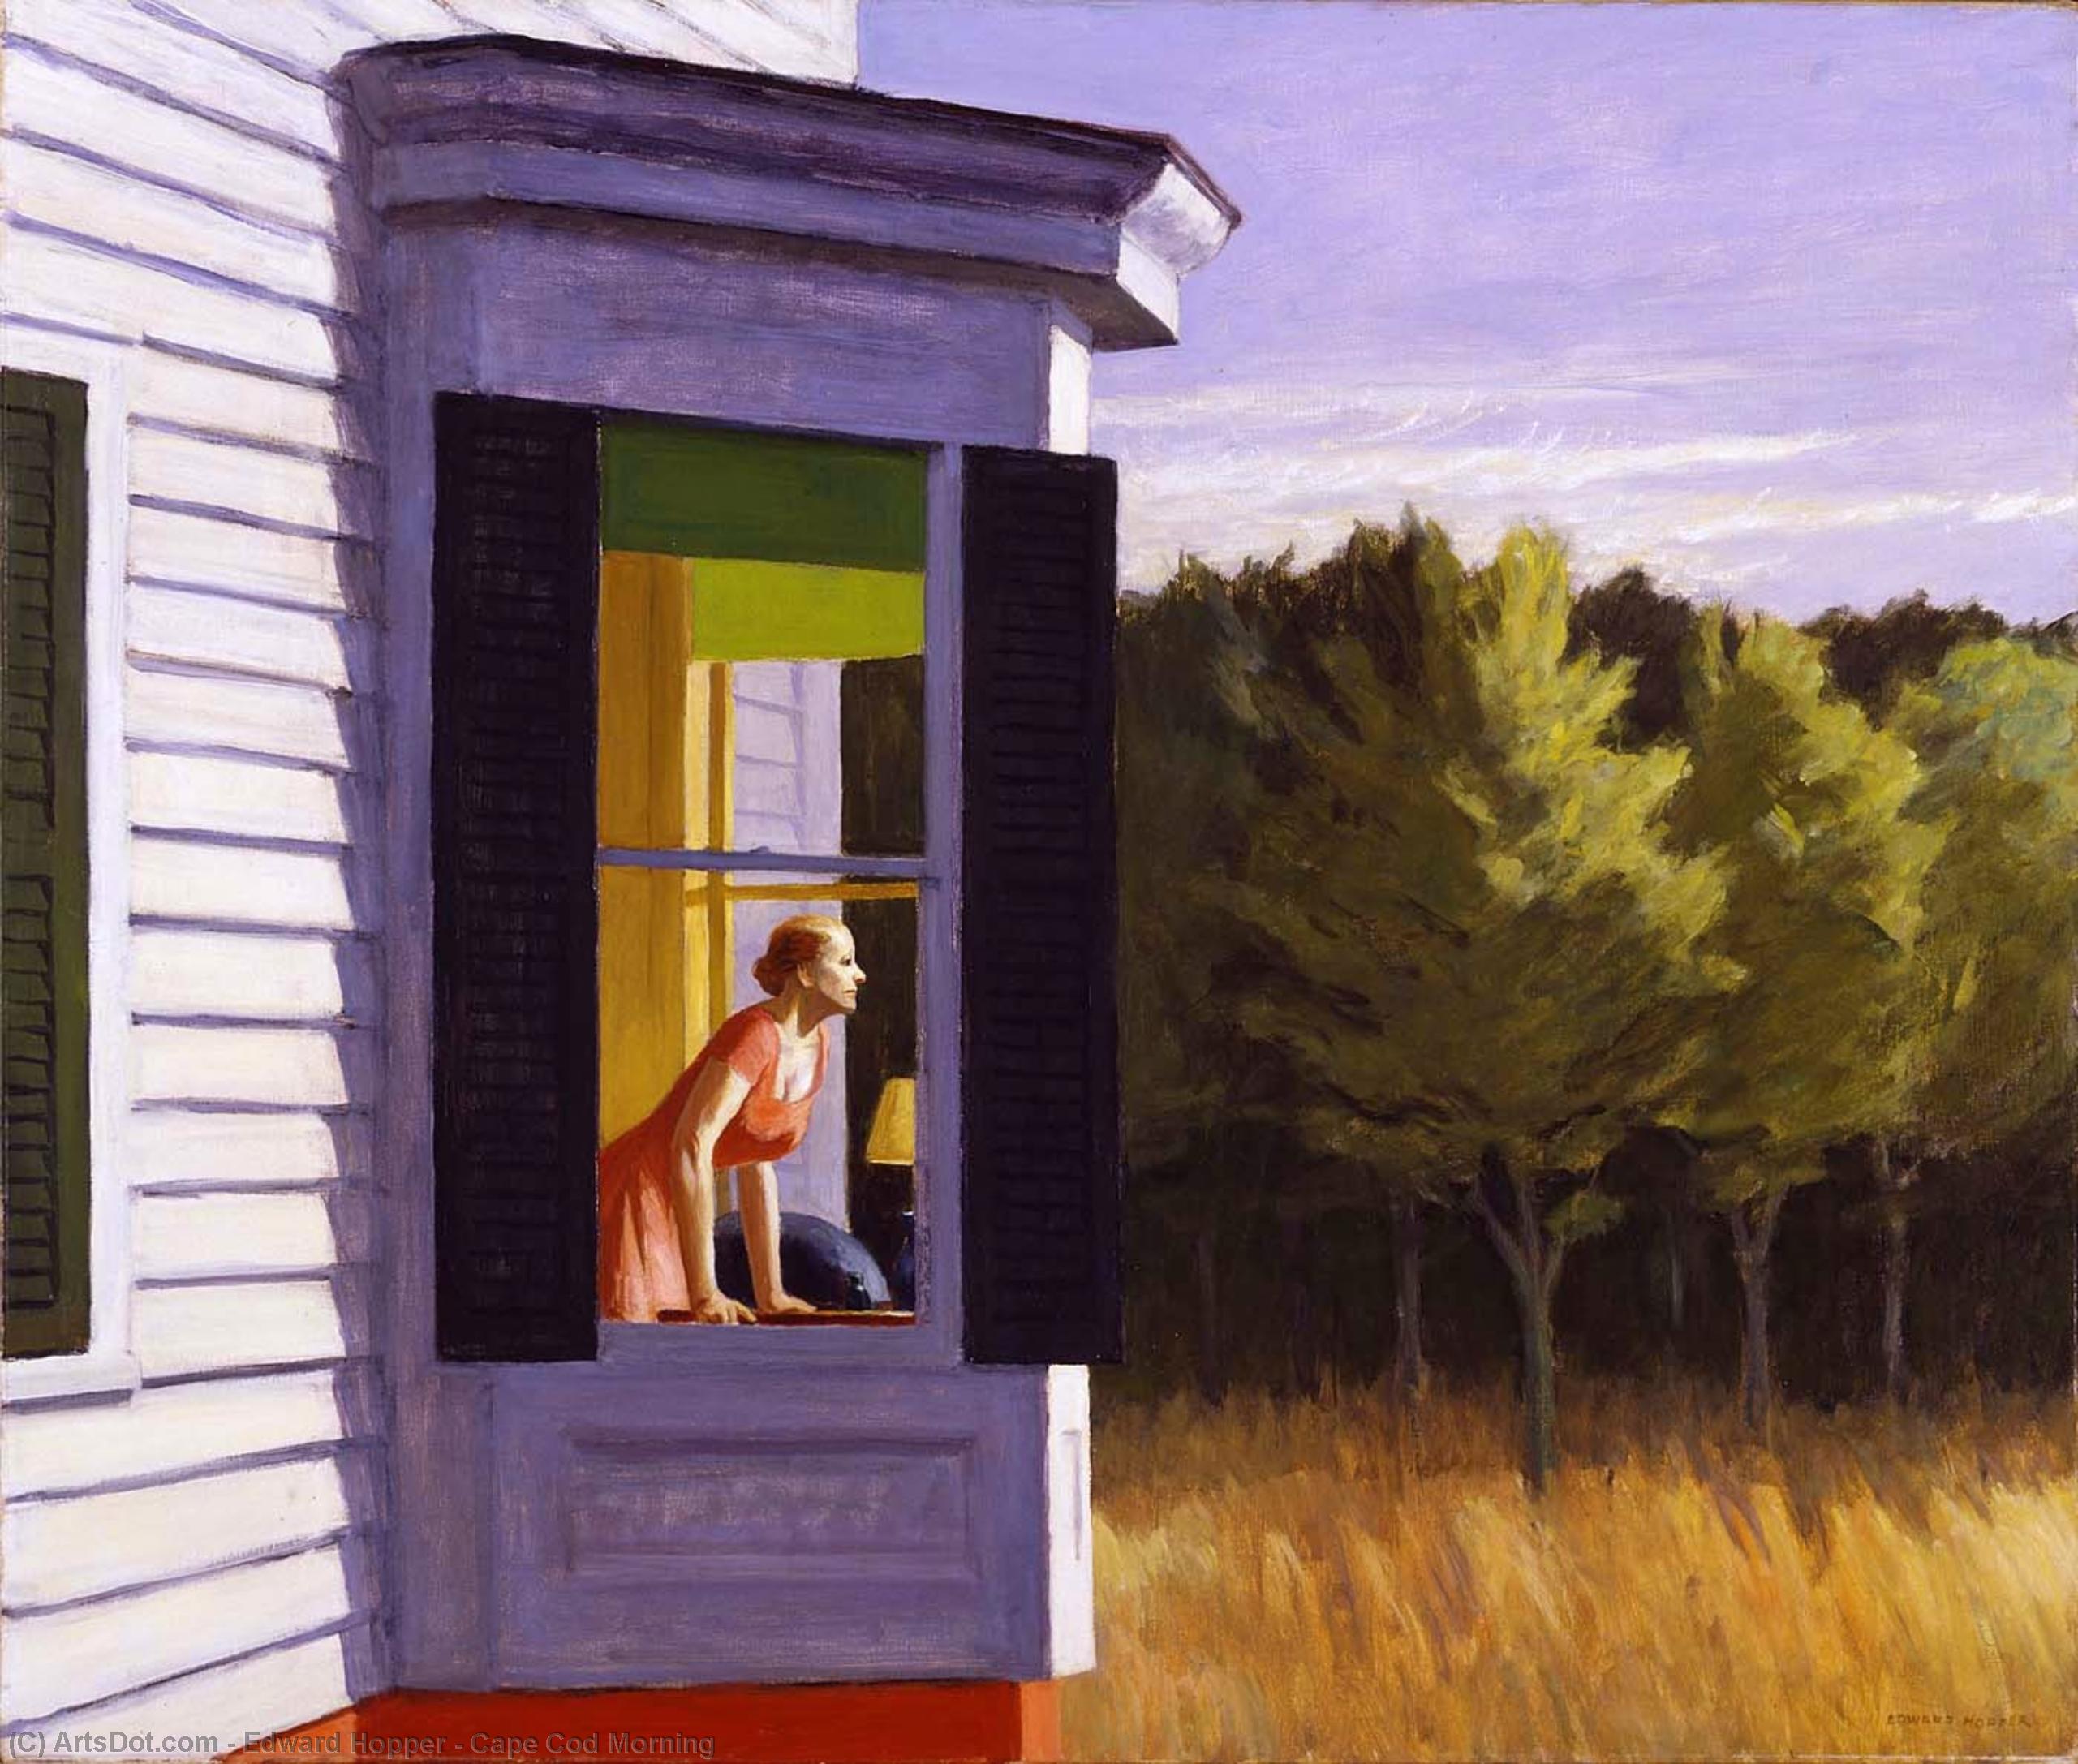 順序 油絵 ケープコッドモーニング, 1950 バイ Edward Hopper (に触発された) (1931-1967, United States) | ArtsDot.com